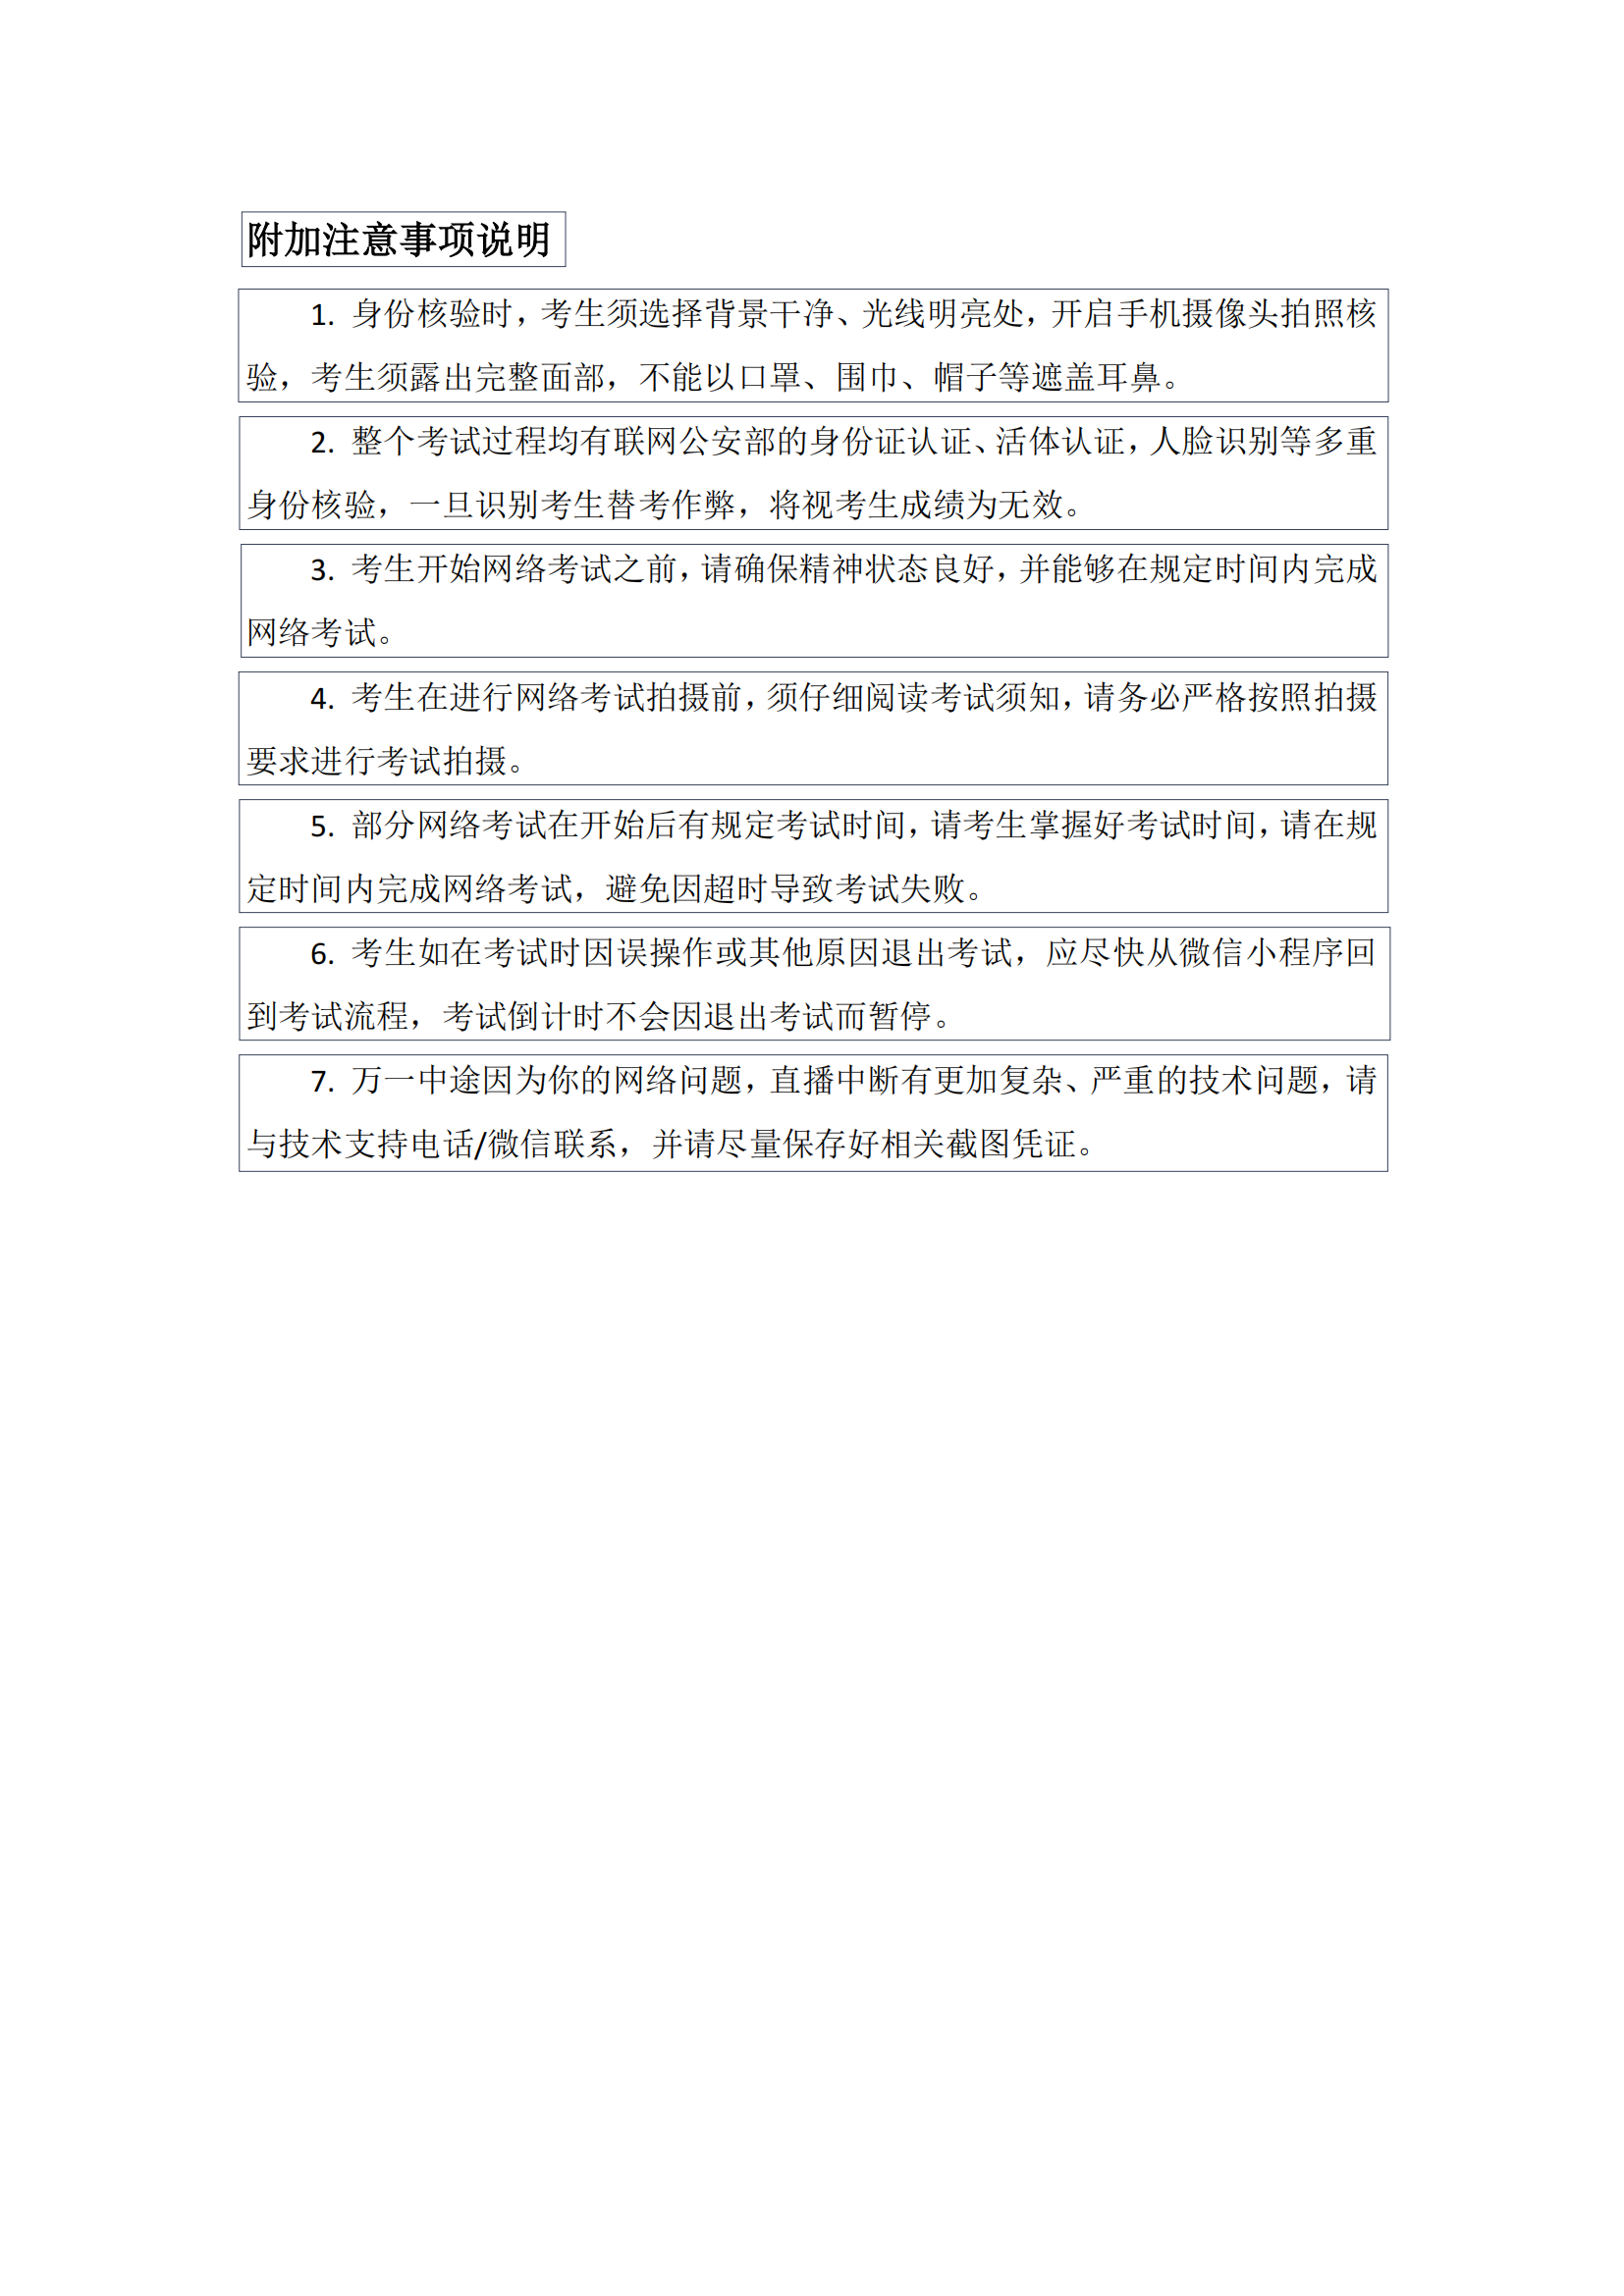 中国戏曲学院2022年本科招生远程面试操作说明_04.png